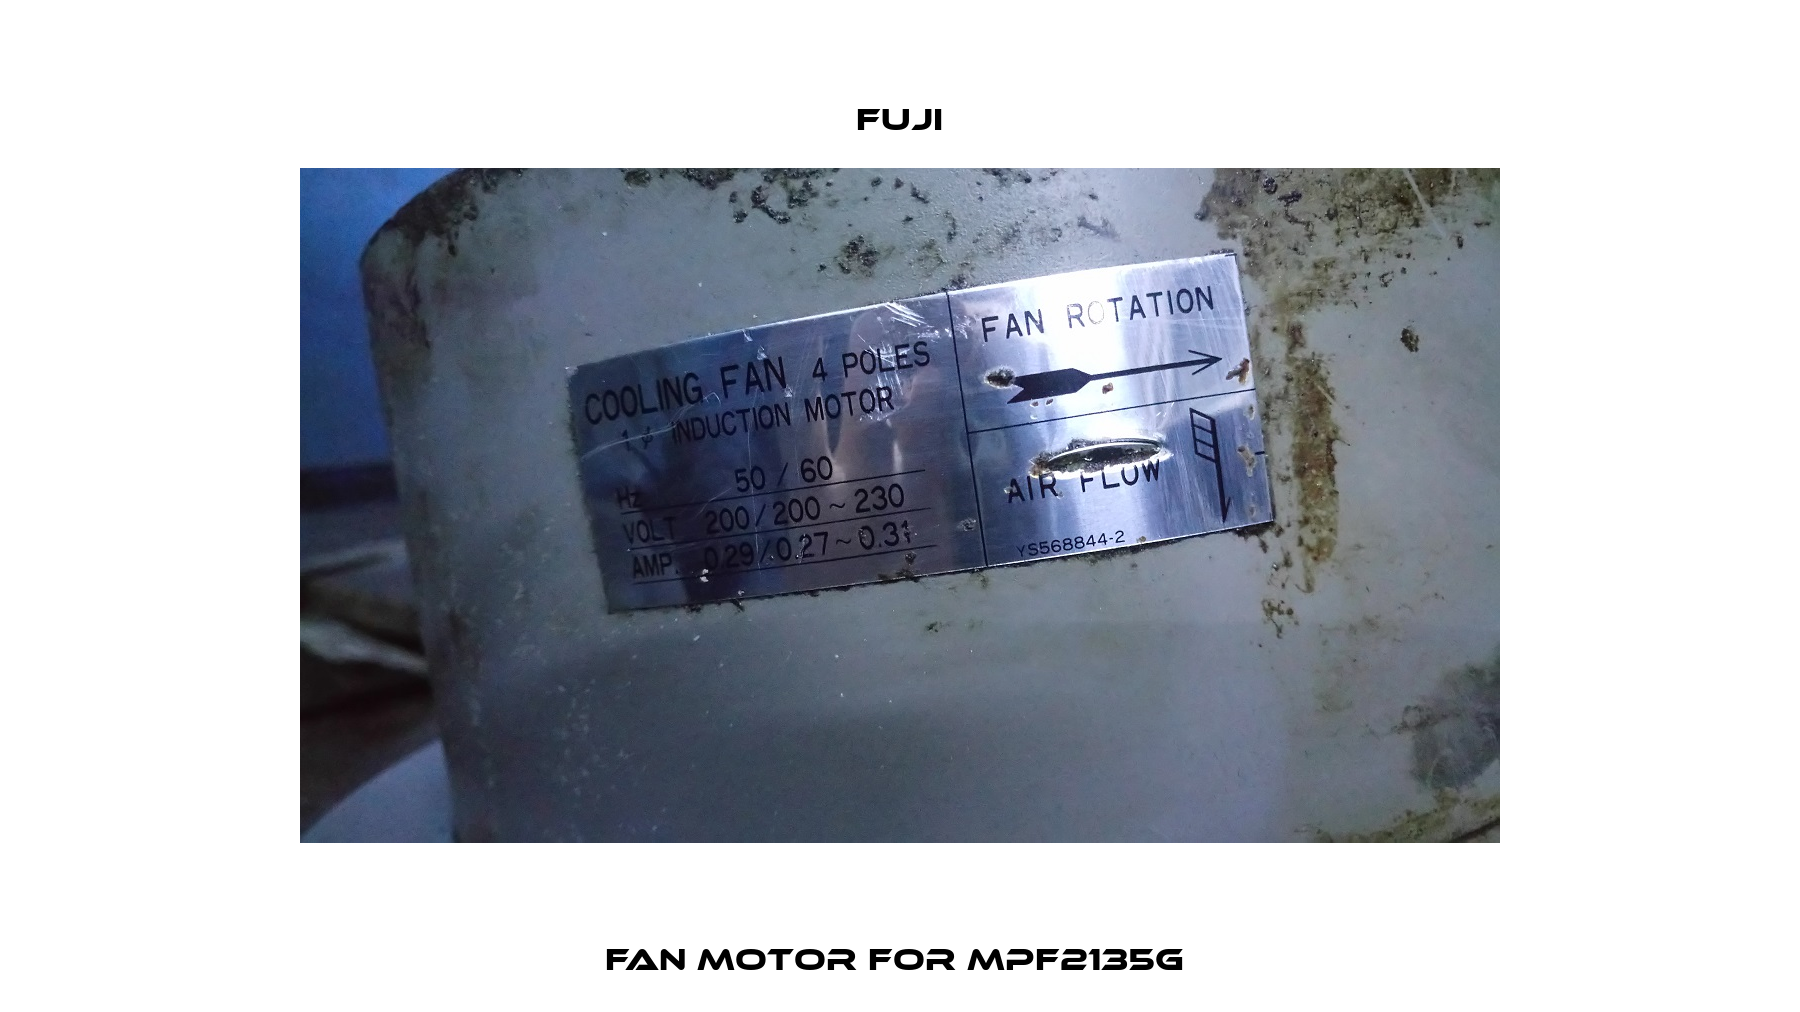 Fan motor For MPF2135G  Fuji